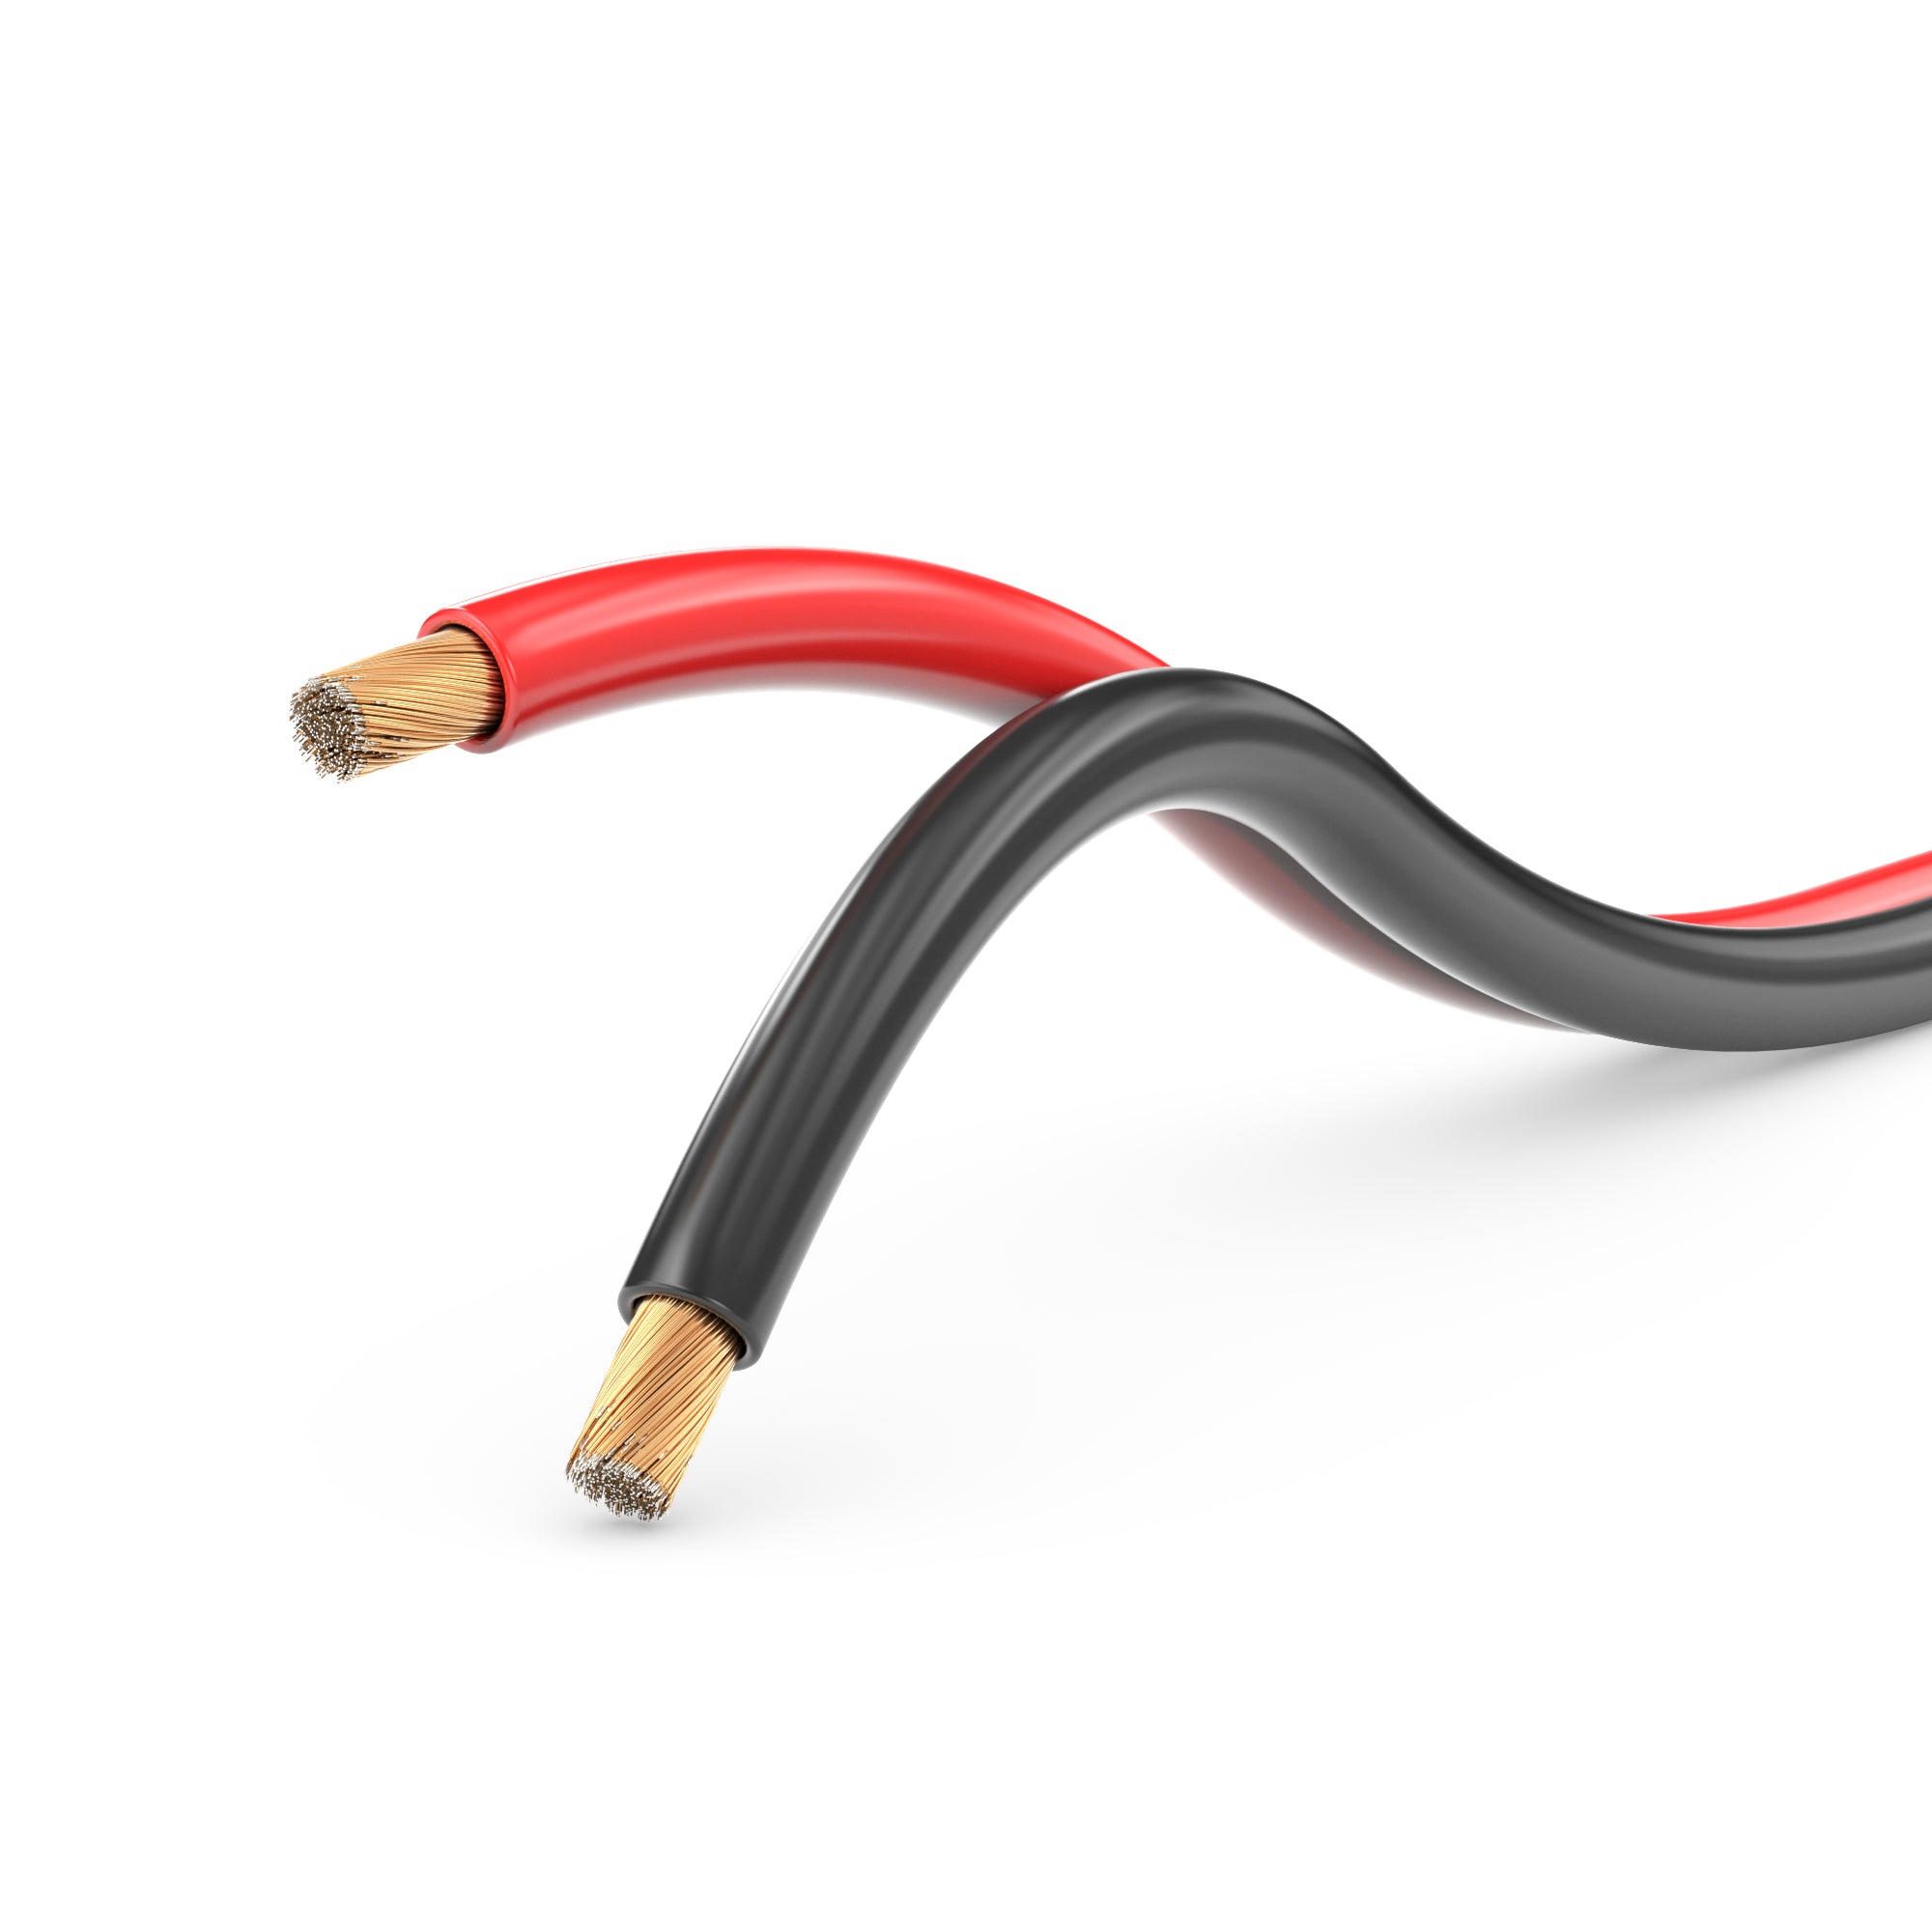 Lautsprecherkabel Audio Kabel Boxenkabel 100% CCA 50m 2x0,75mm² rot / schwarz